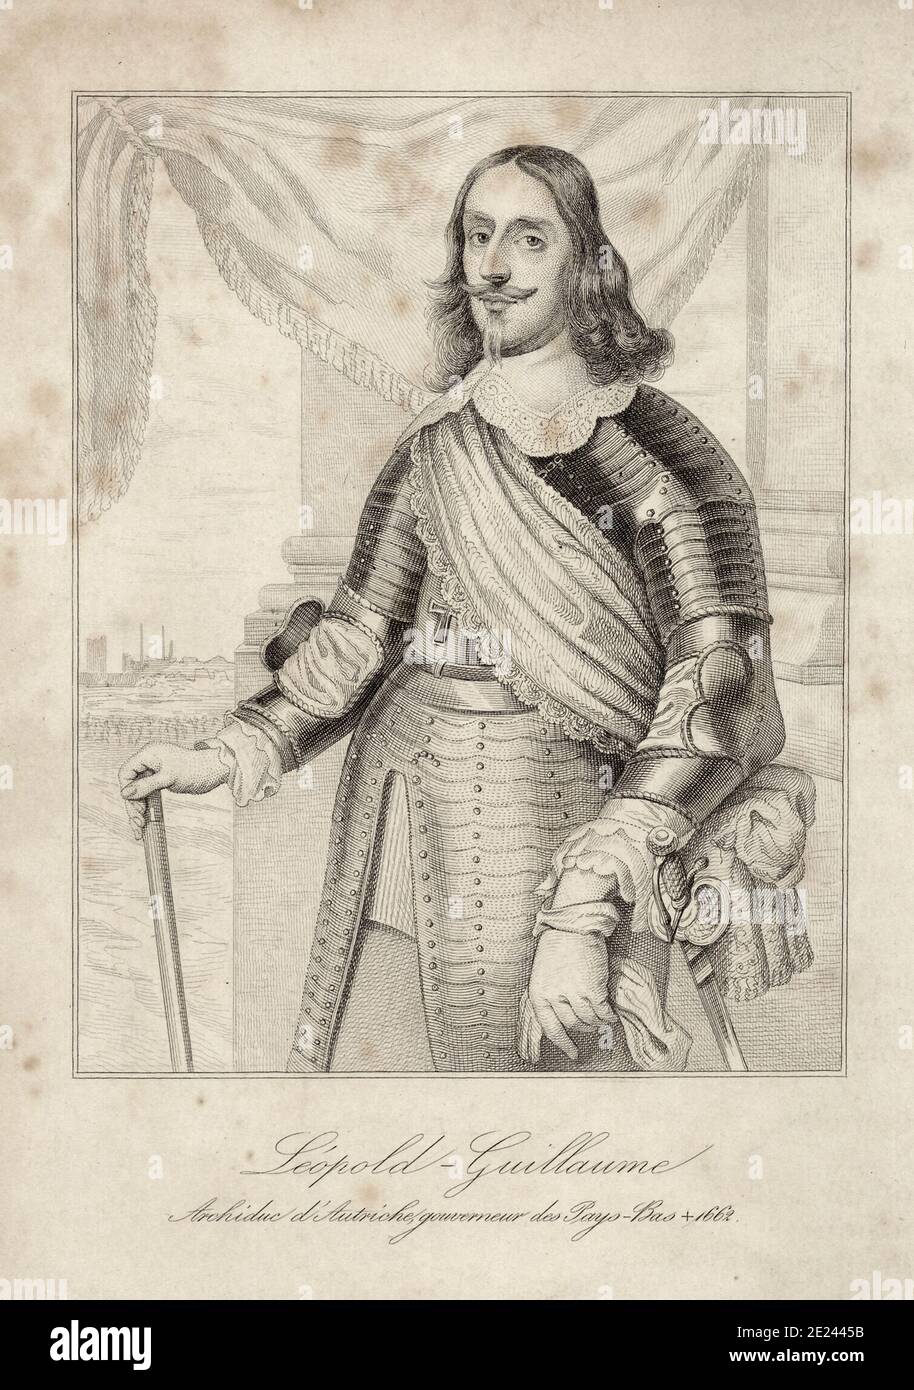 Grabado del archiduque Leopoldo Guillermo de Austria (1614 - 1662) fue un comandante militar austriaca, Gobernador de los Países Bajos españoles desde 1647 a 16 Foto de stock